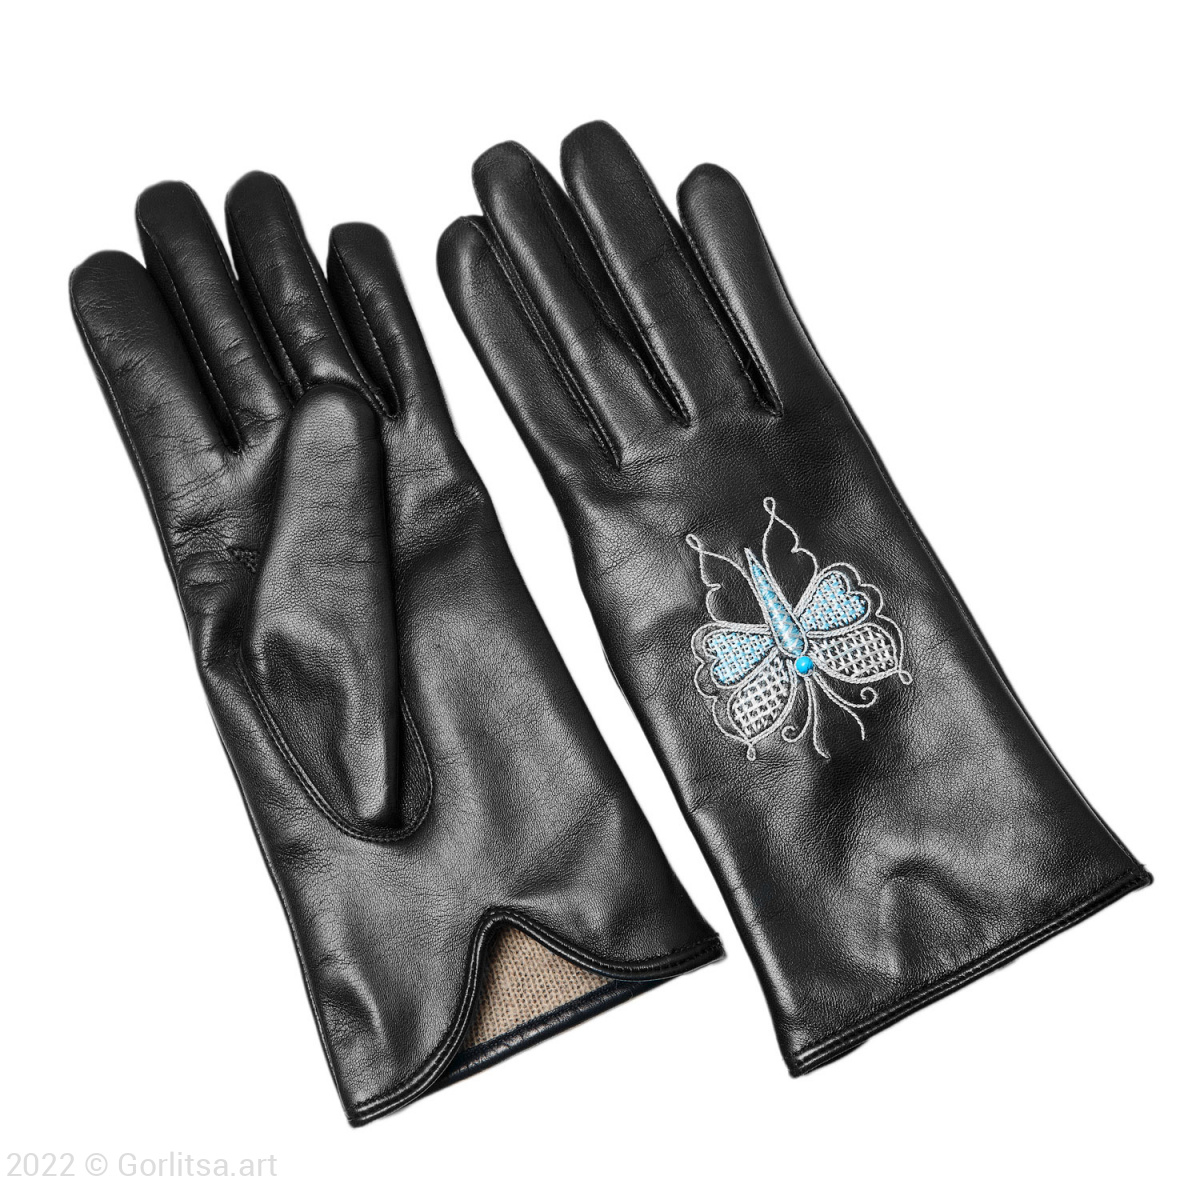 Перчатки женские «Бабочка»,112/154, цвет: чёрный, /серебро, кожа нат. кожа Киселева Г.А. фото 6